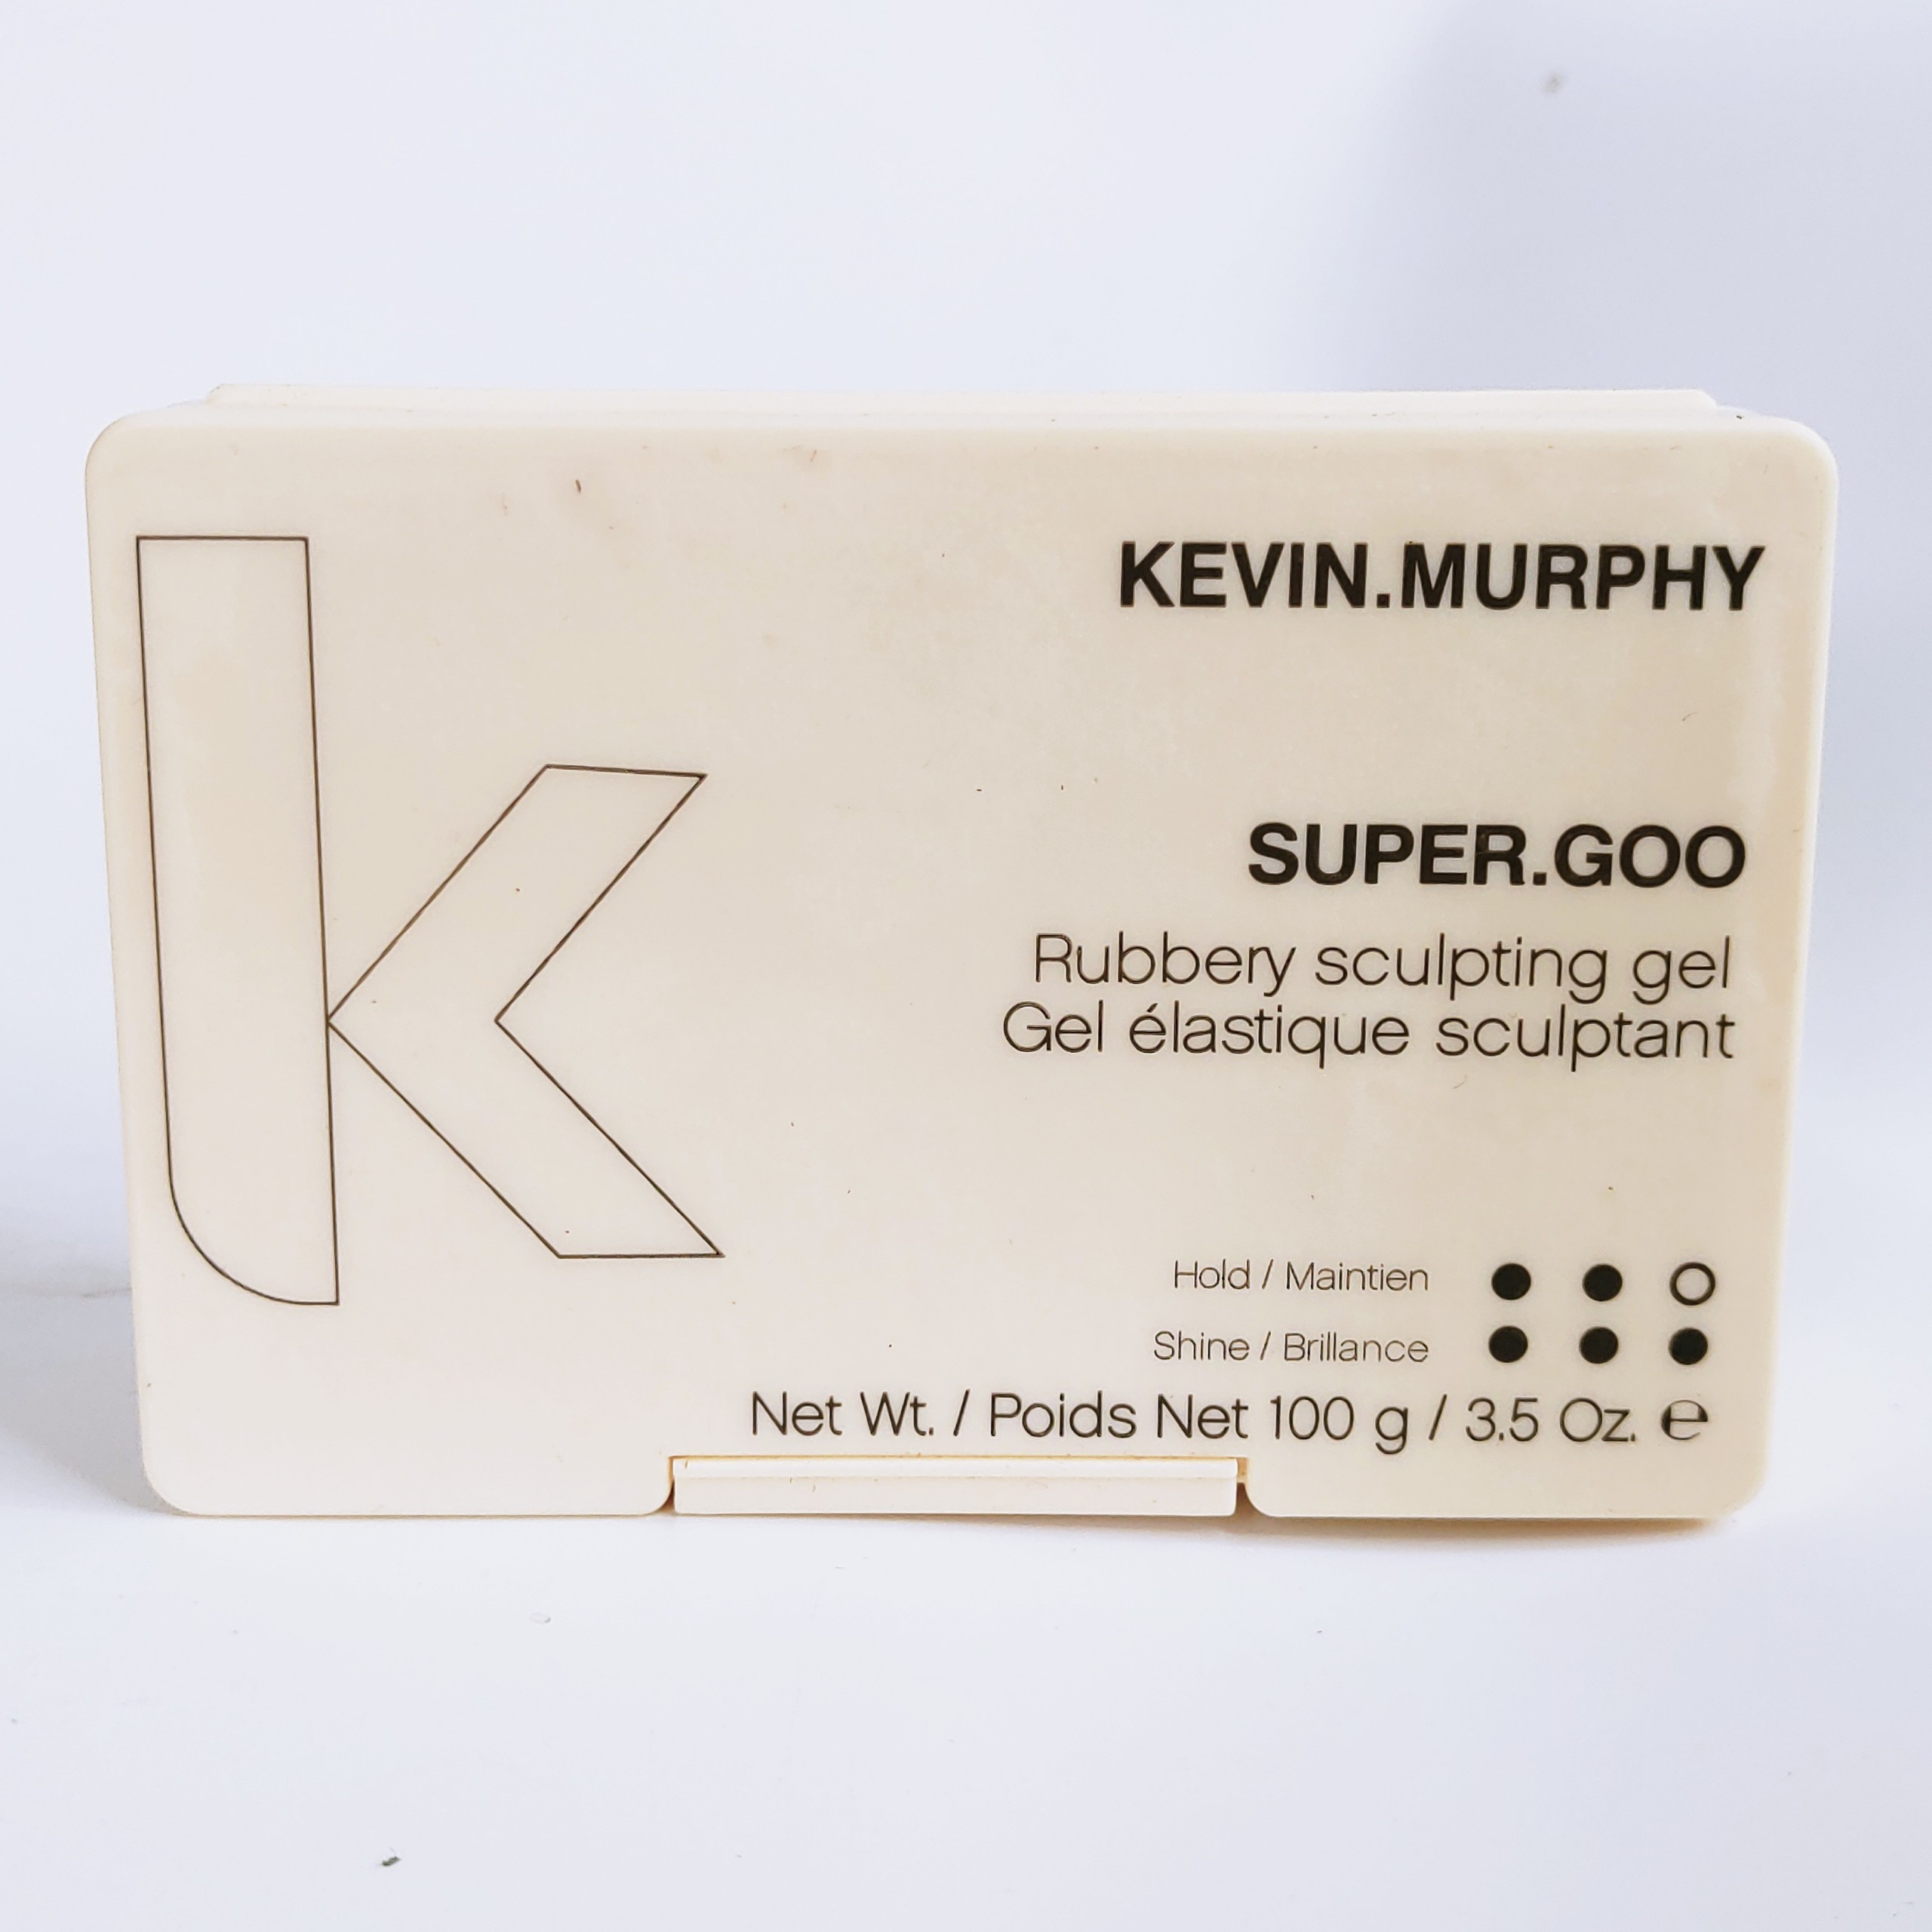 [Tặng kèm Gôm+Lược] Sáp Vuốt Tóc Nam Kevin Murphy Rough Rider chính hãng Úc KEM